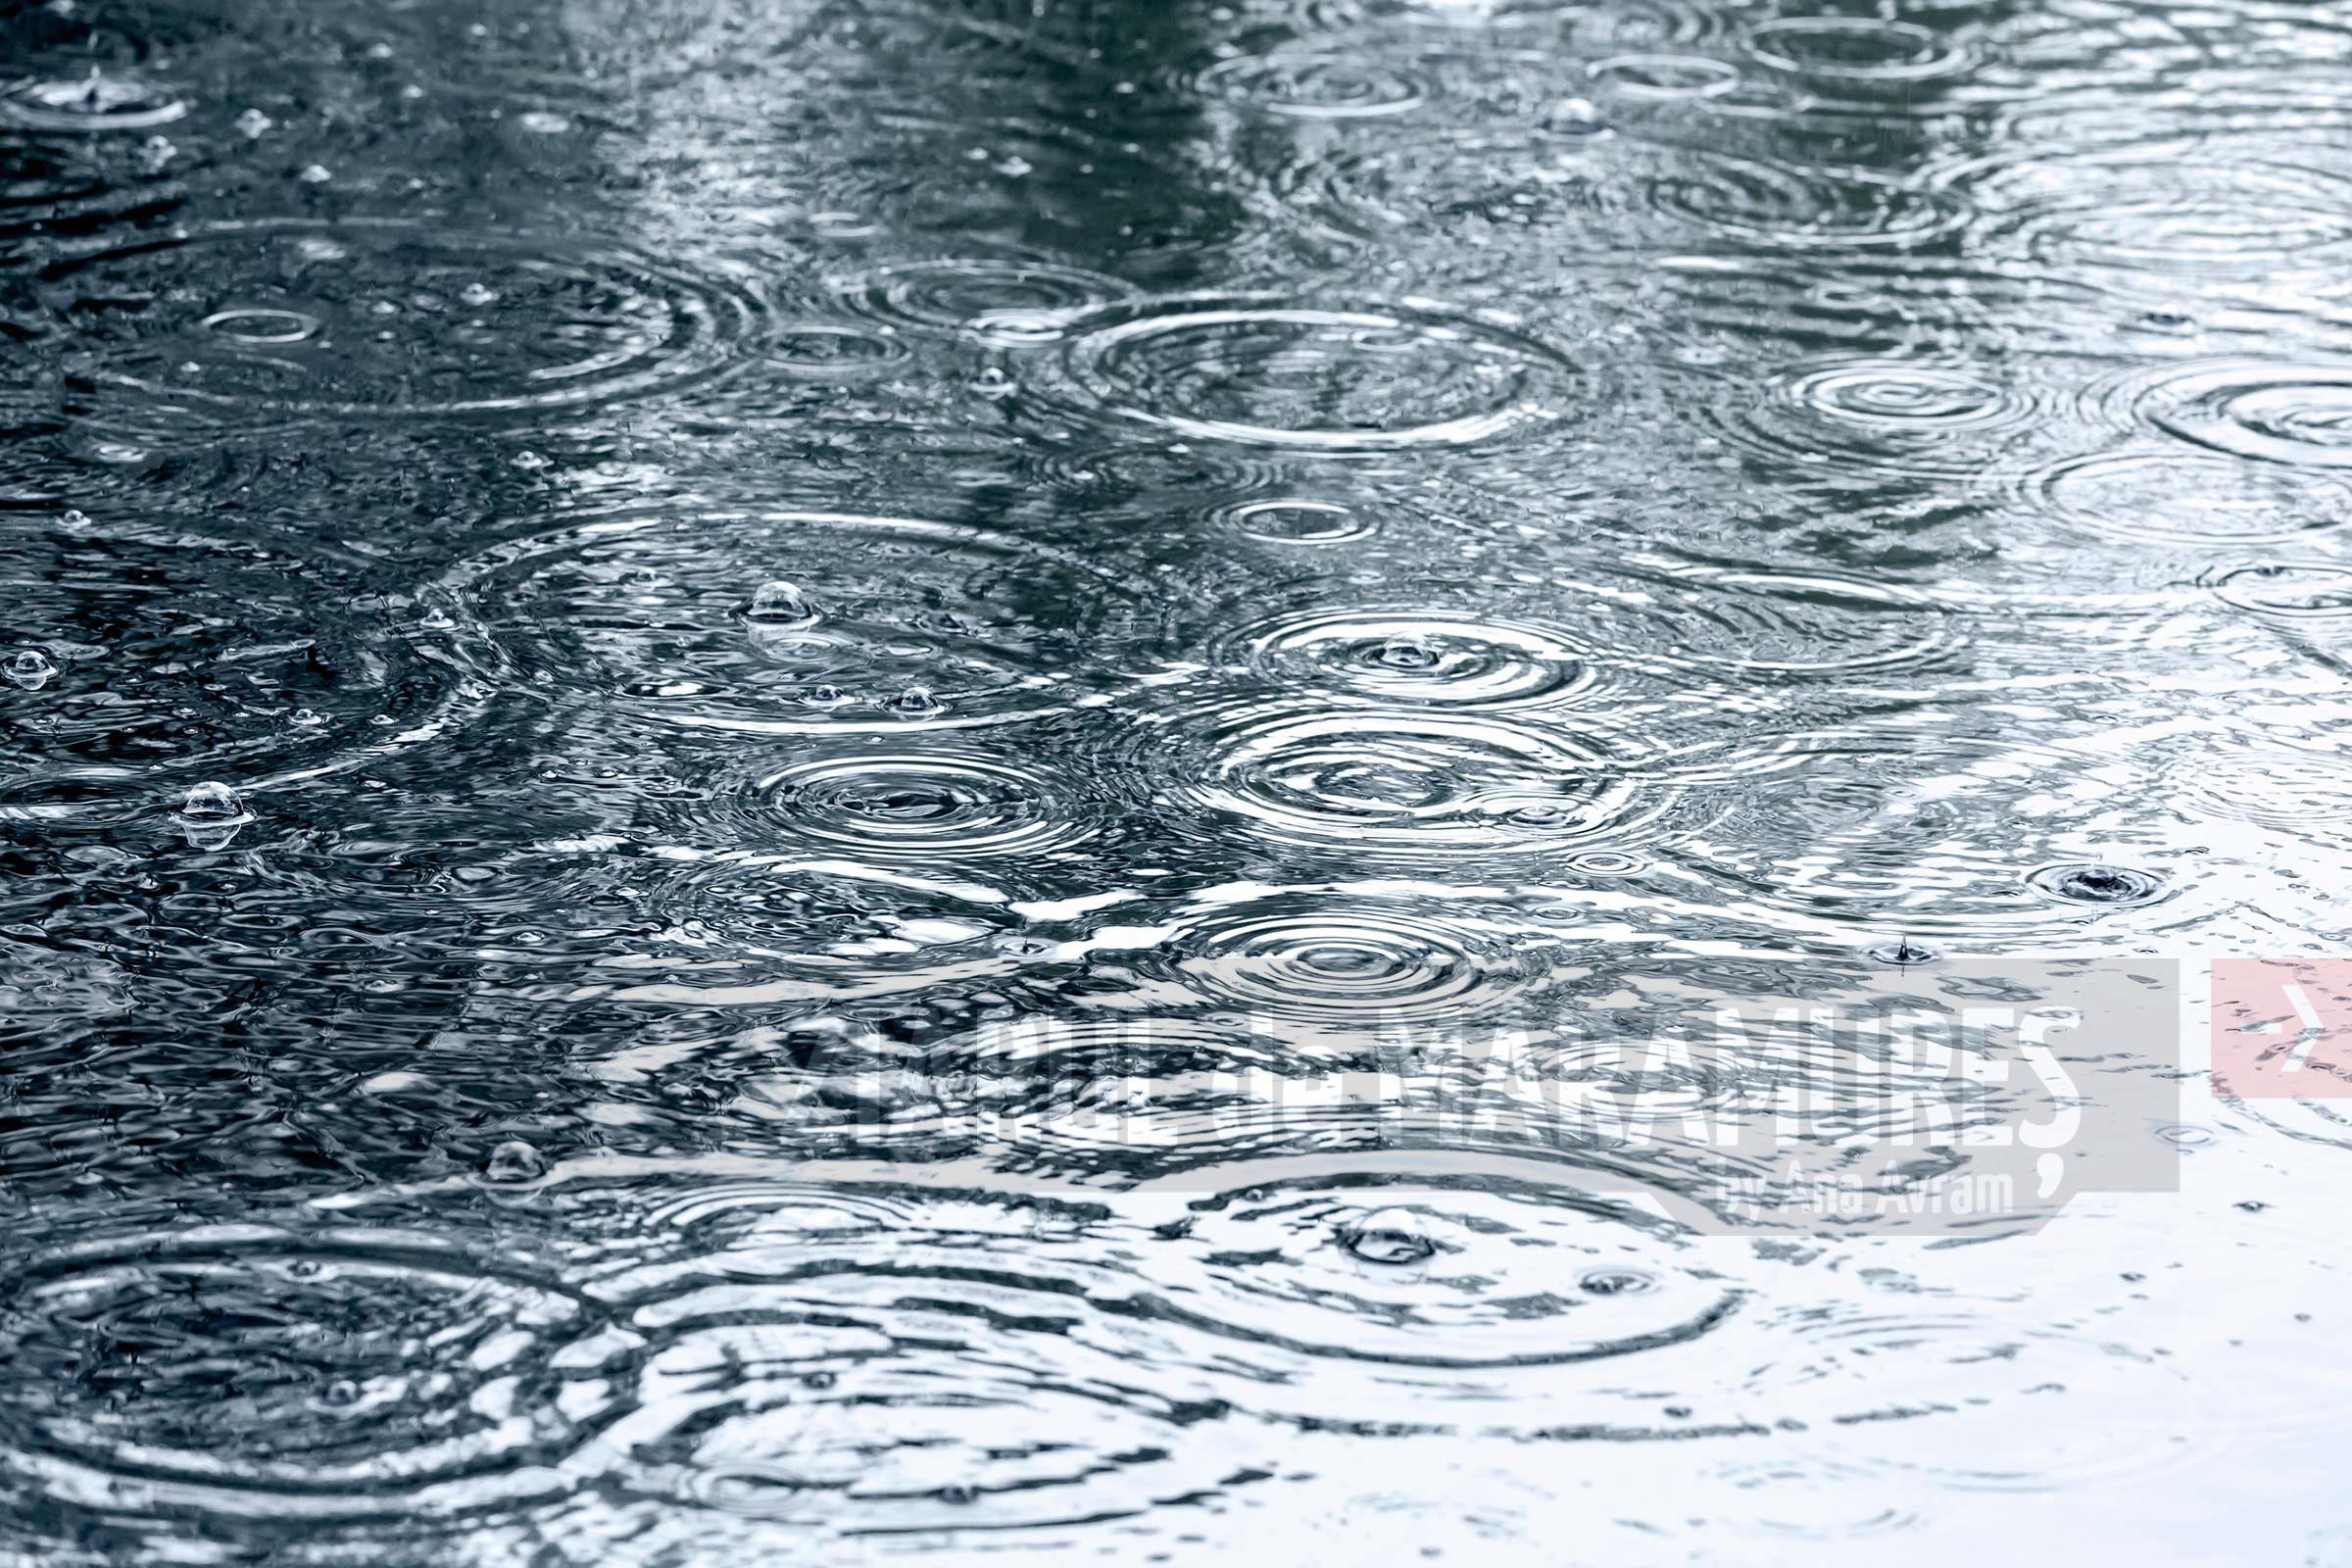 Ploi și temperaturi cuprinse între 1 grad și 8 grade C, prognozate pentru marți, 20 feb., în Maramureș